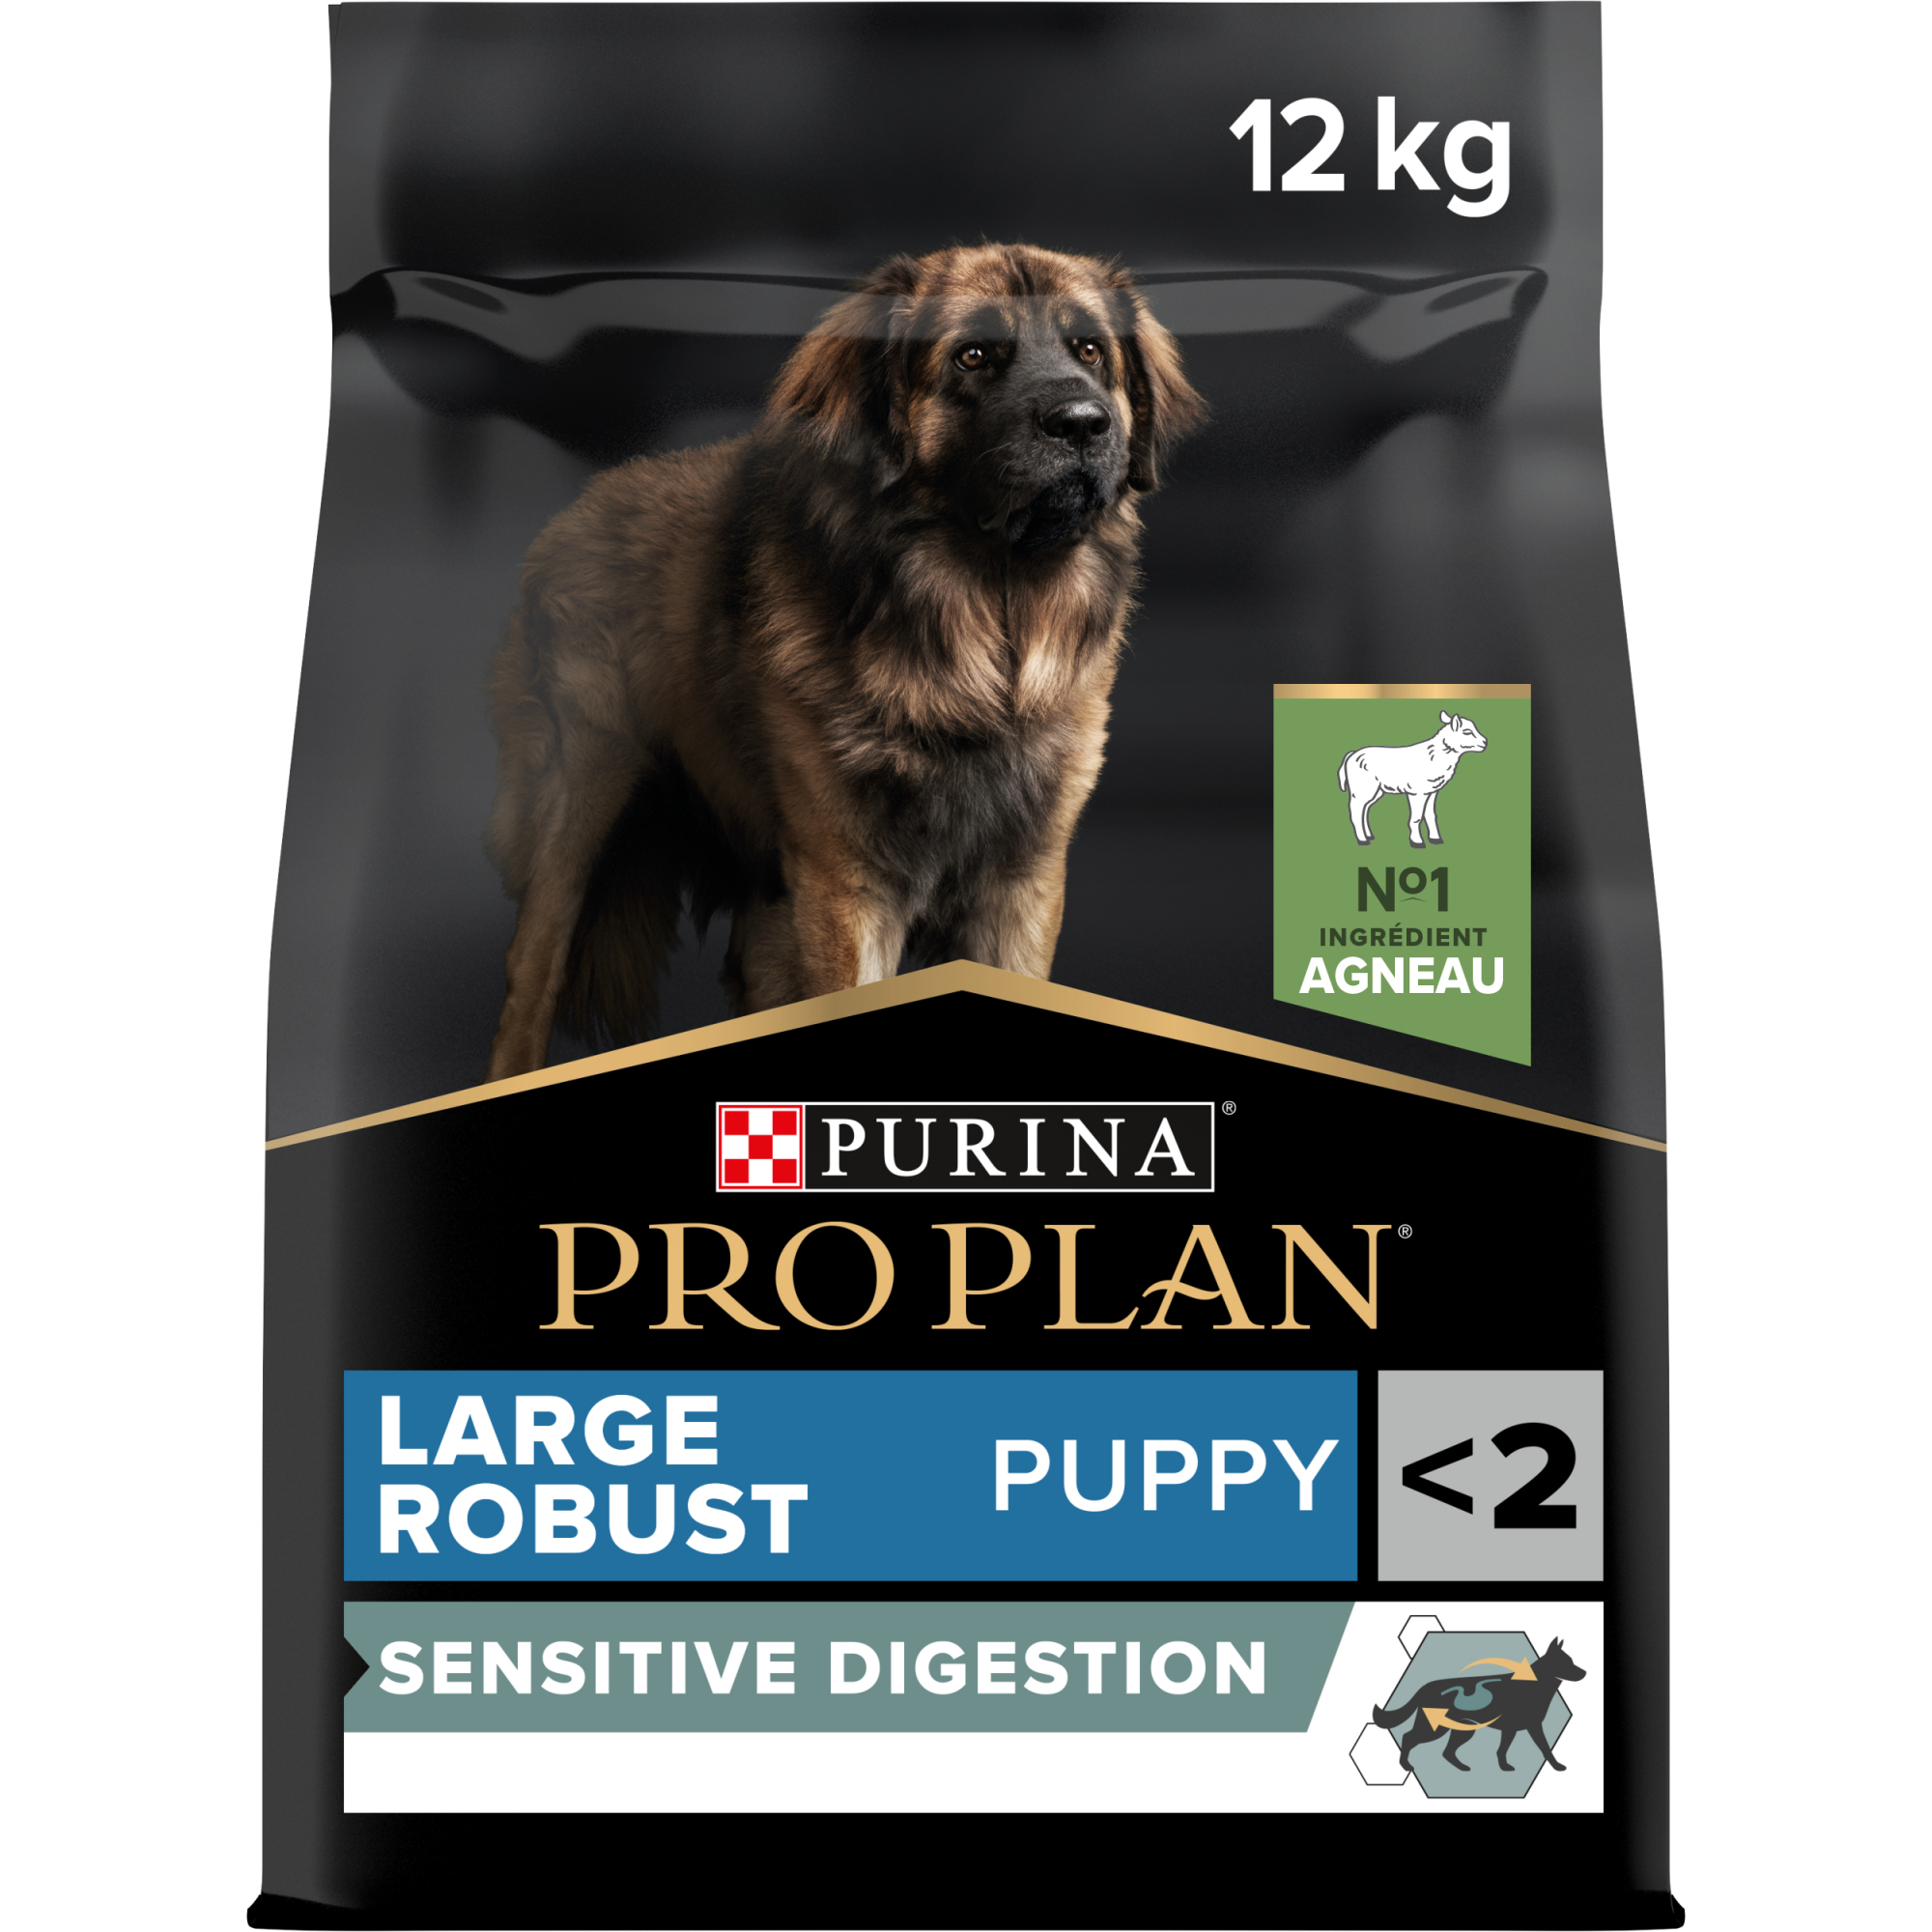 PRO PLAN Large Robust Puppy Sensitive Digestion Ração seca sem cereais para cachorros